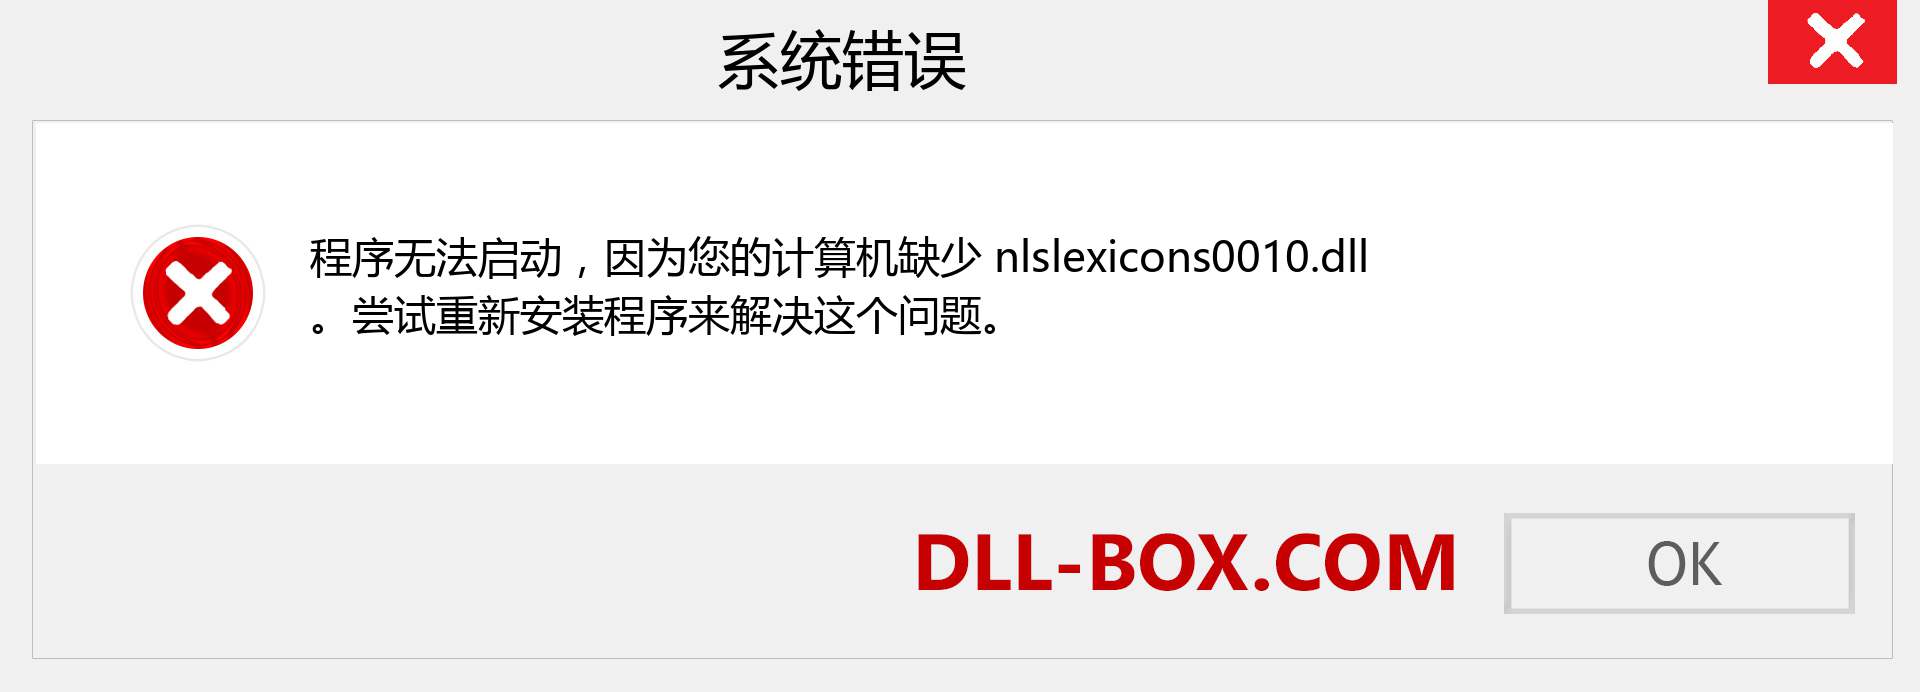 nlslexicons0010.dll 文件丢失？。 适用于 Windows 7、8、10 的下载 - 修复 Windows、照片、图像上的 nlslexicons0010 dll 丢失错误